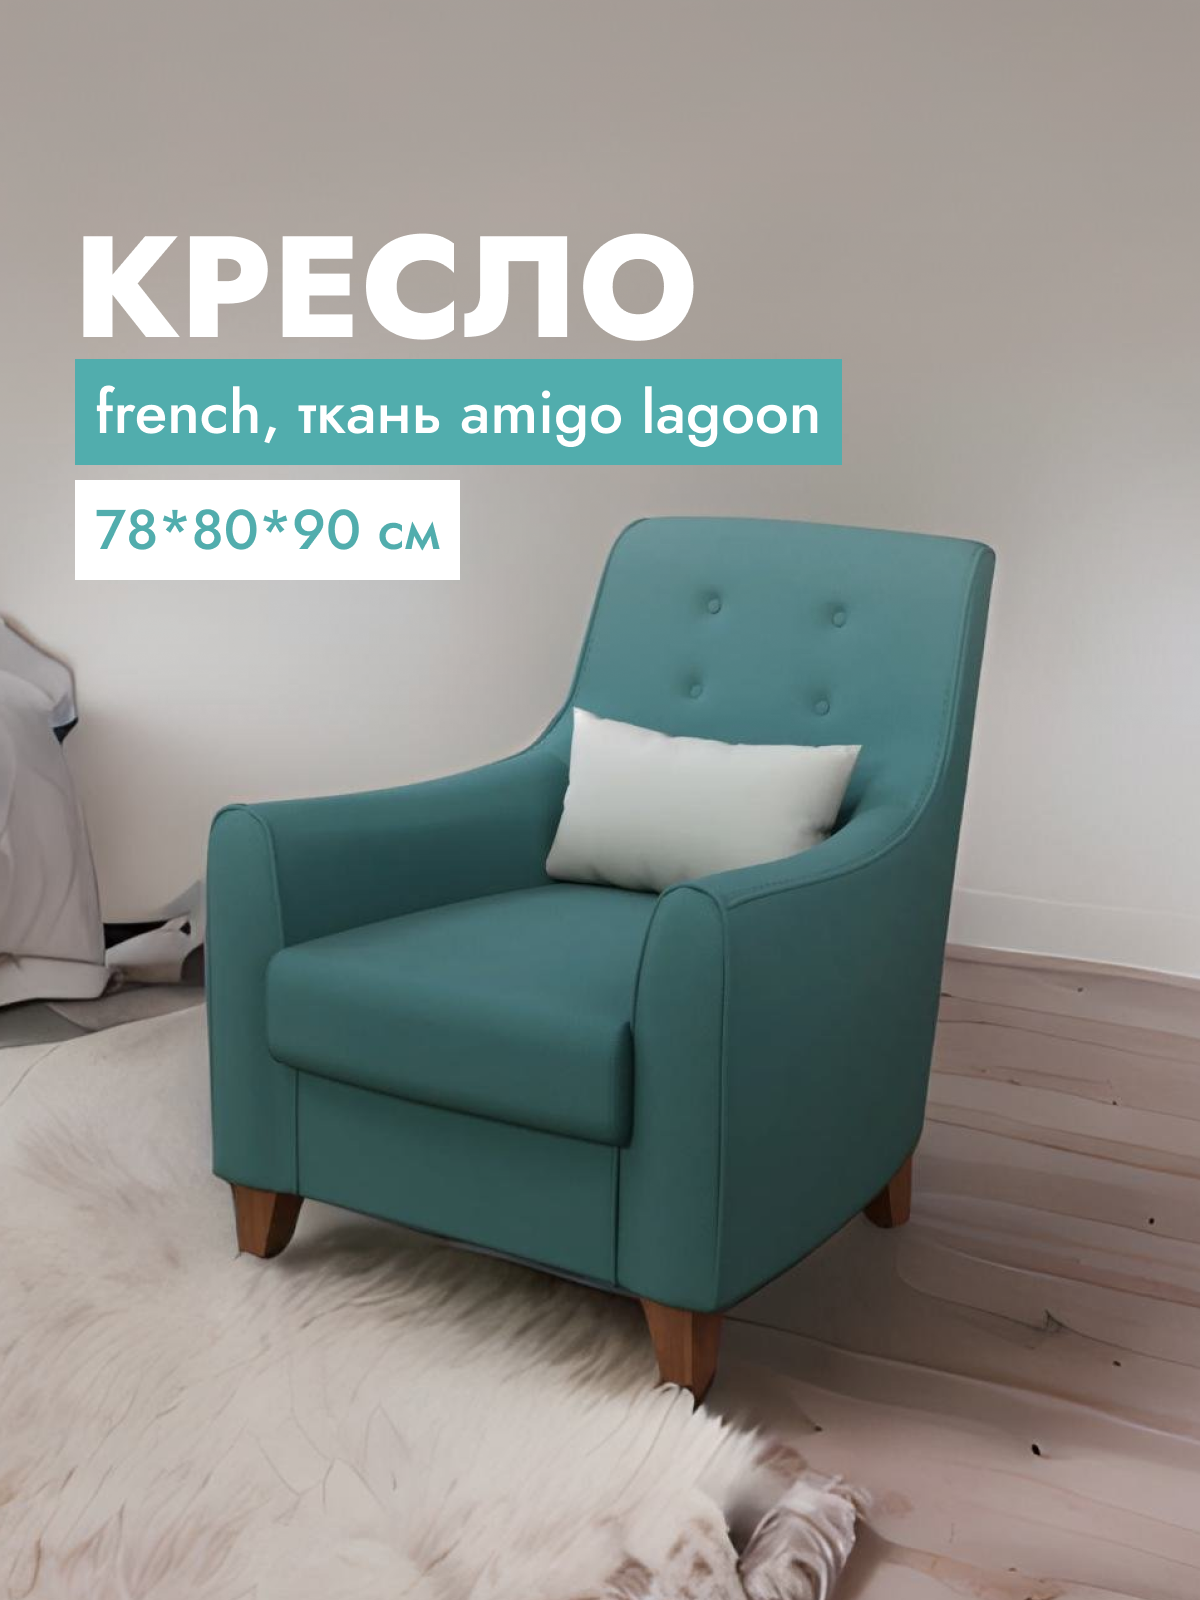 Кресло для гостиной Alat Home French, ткань, 78x80x90 см, зеленый